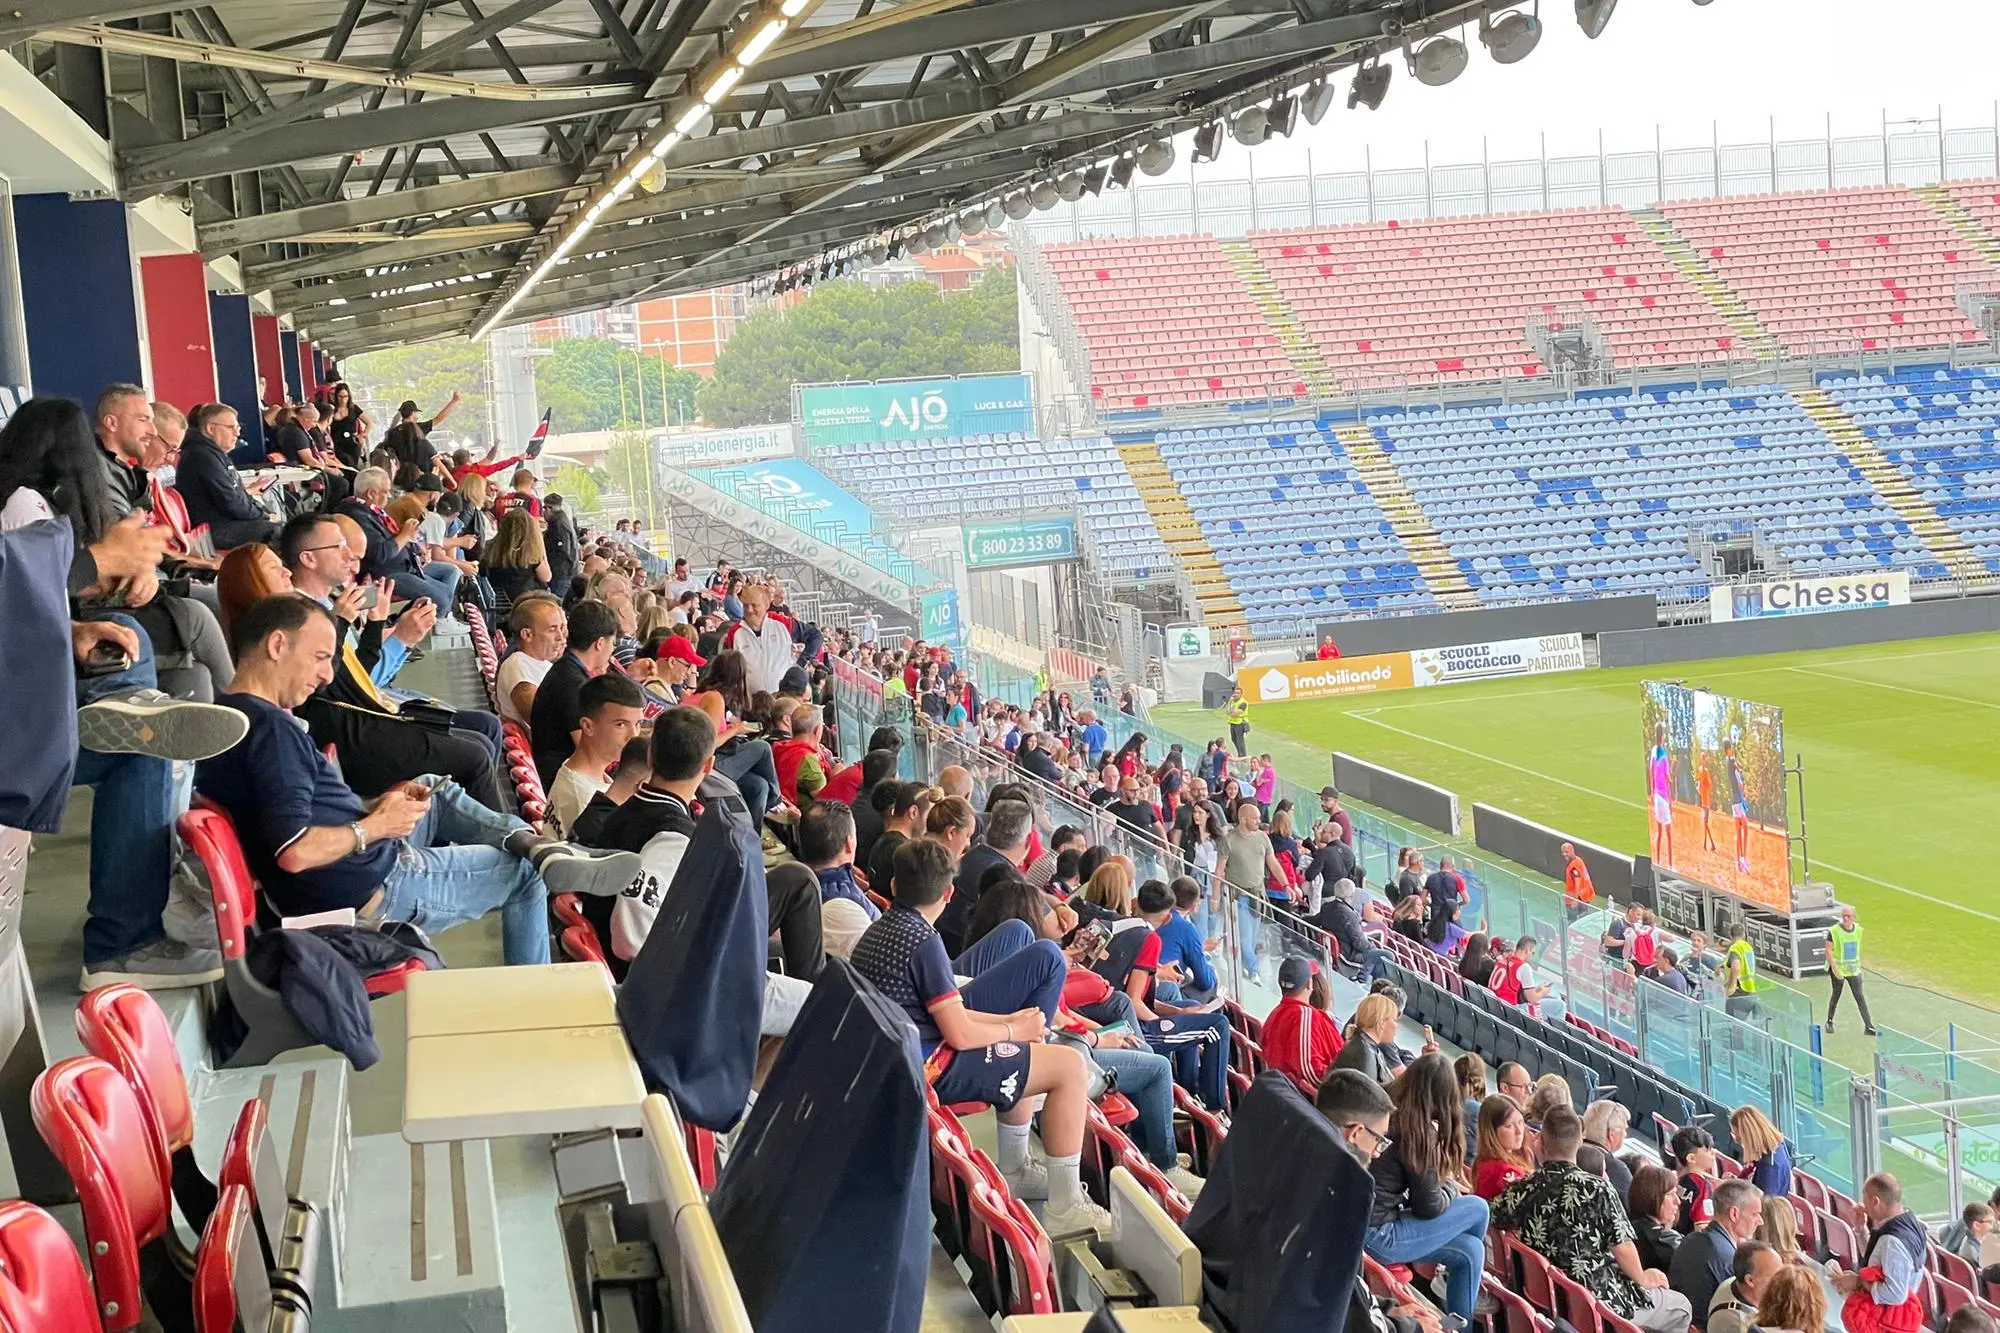 La Main Stand dell’Unipol Domus coi maxischermi per seguire Parma-Cagliari (foto Spignesi)